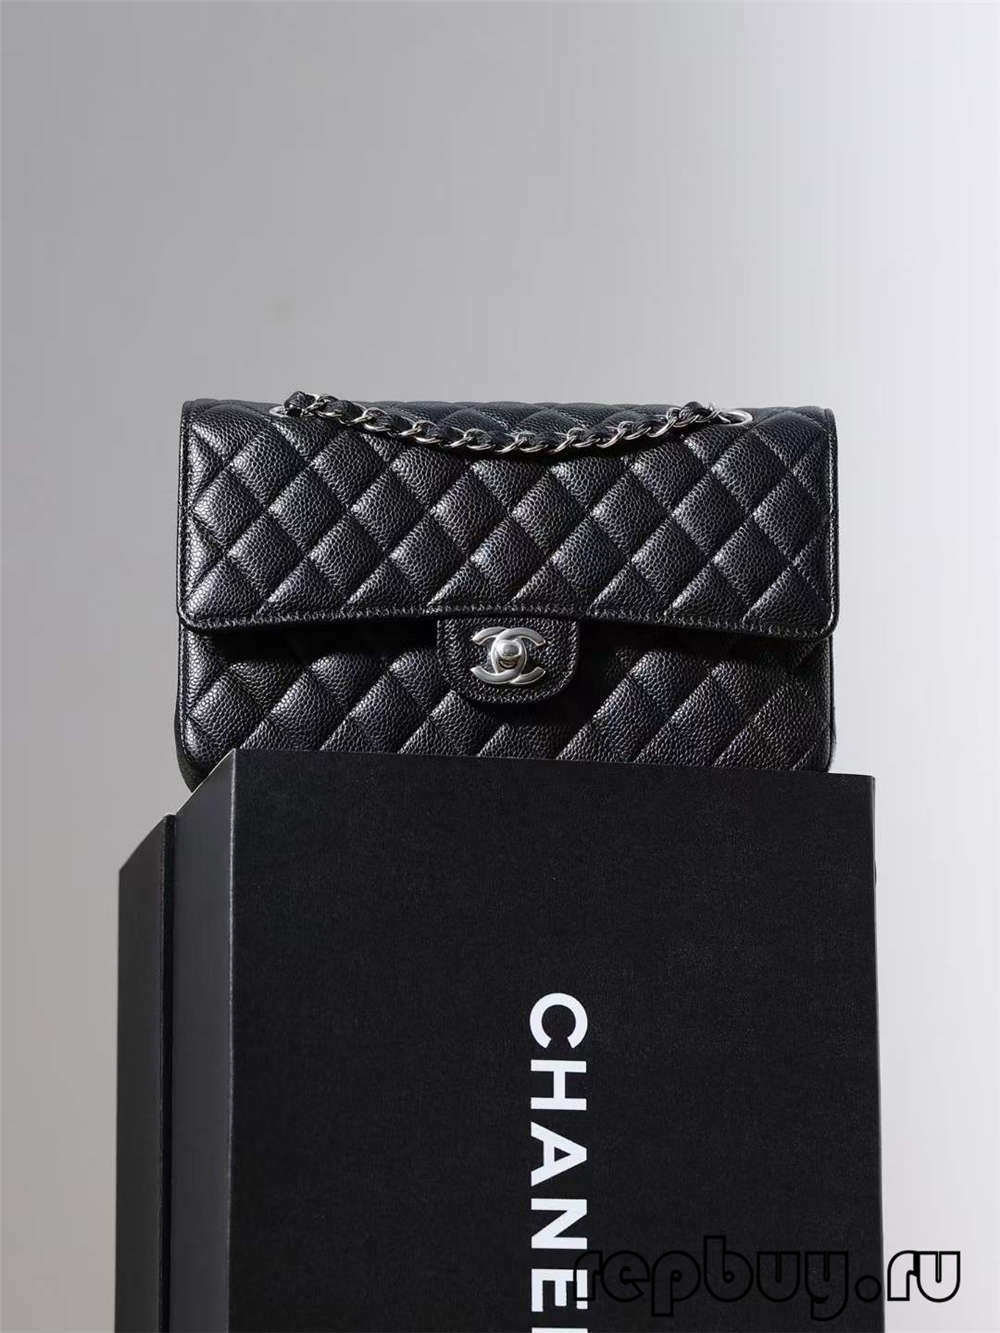 Shebag All-time Best Seller——Top Replica Chanel's Most Classic Medium 25cm Classic Flap (Chanel CF Caviar Leather Black) (2022 diperbarui)-Toko Online Tas Louis Vuitton Palsu Kualitas Terbaik, Tas desainer replika ru